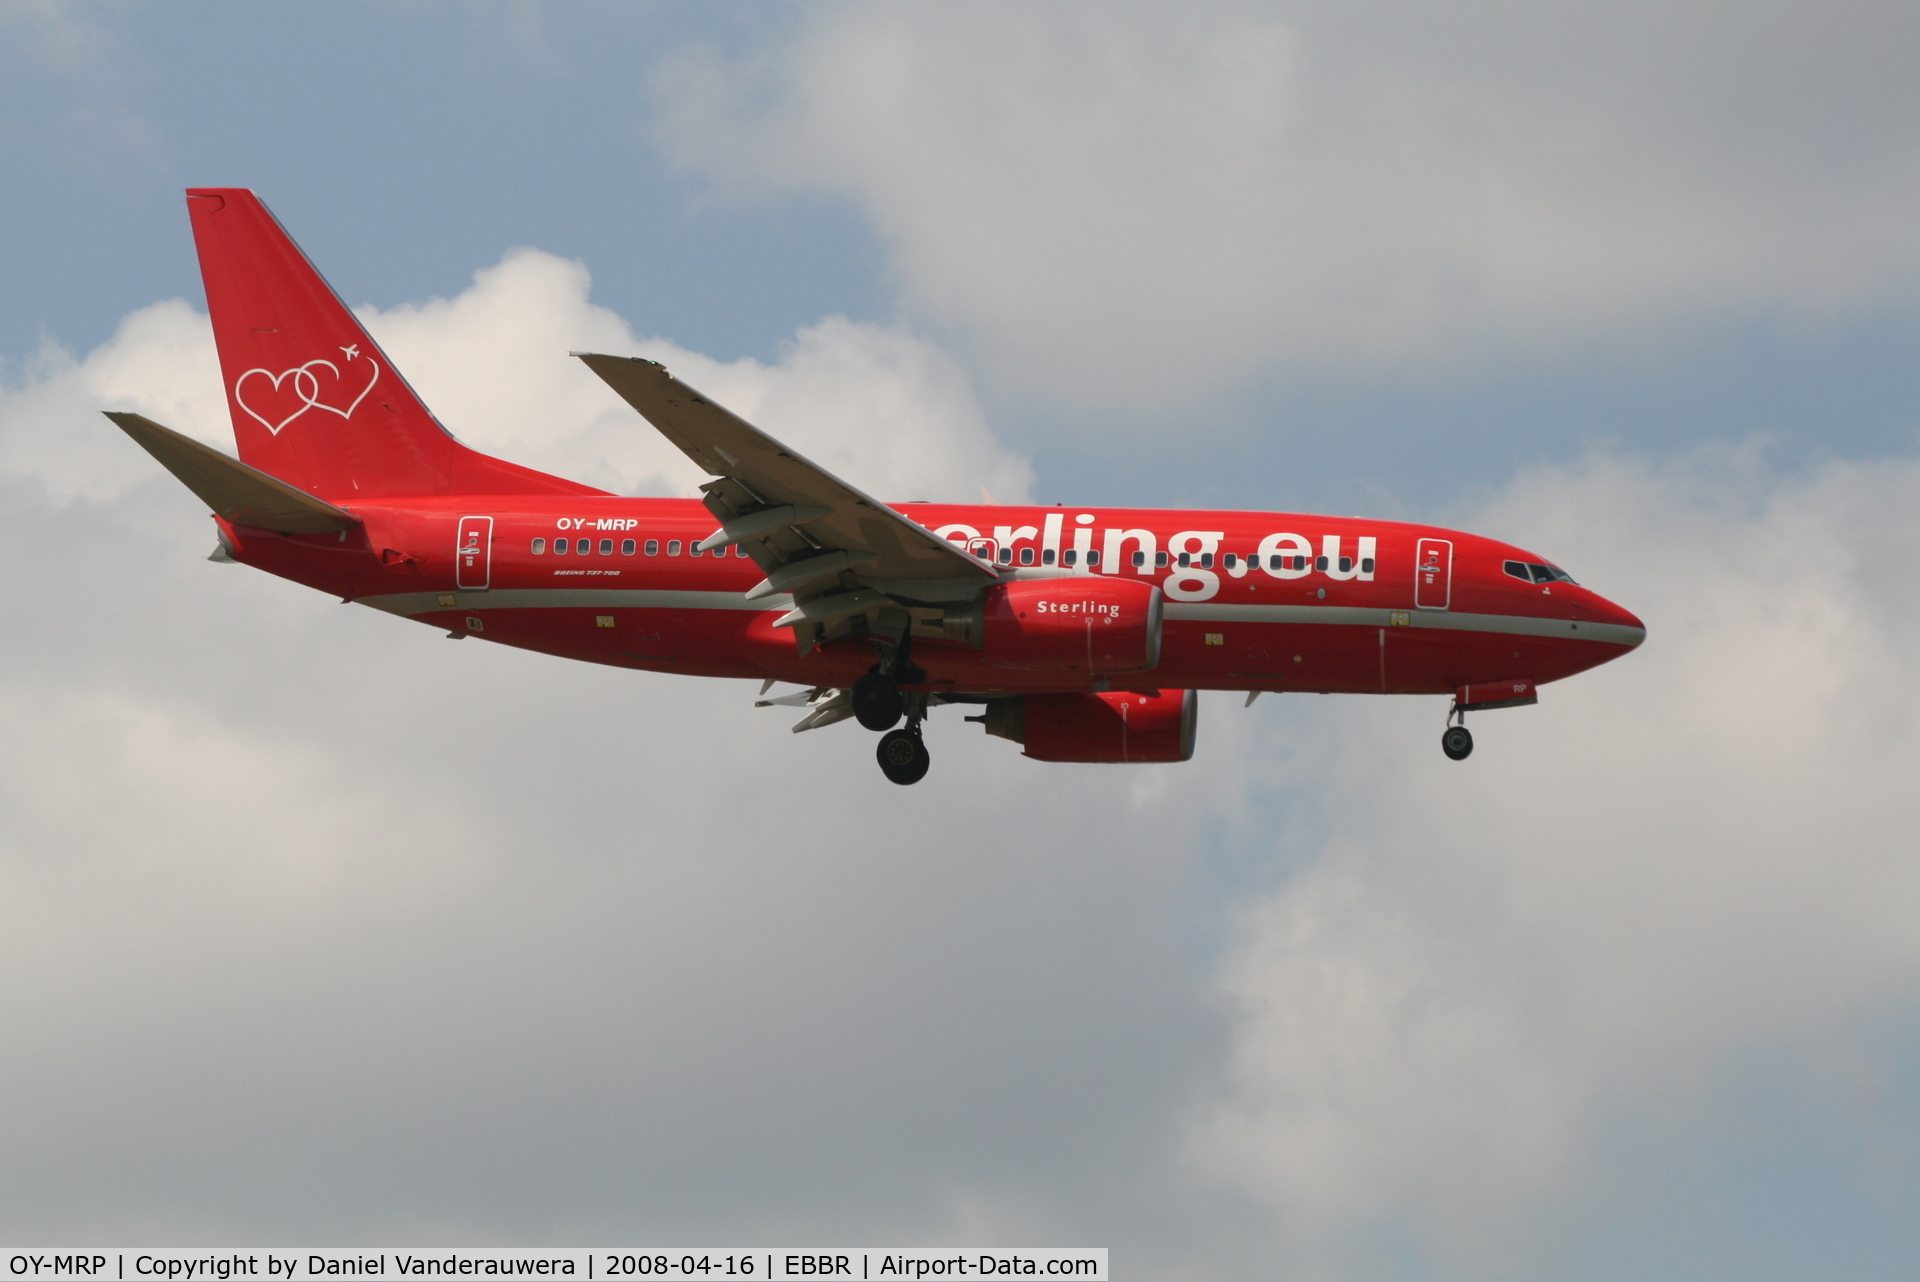 OY-MRP, 2007 Boeing 737-7K9 C/N 34401, flight NB637 is descending to rwy 02